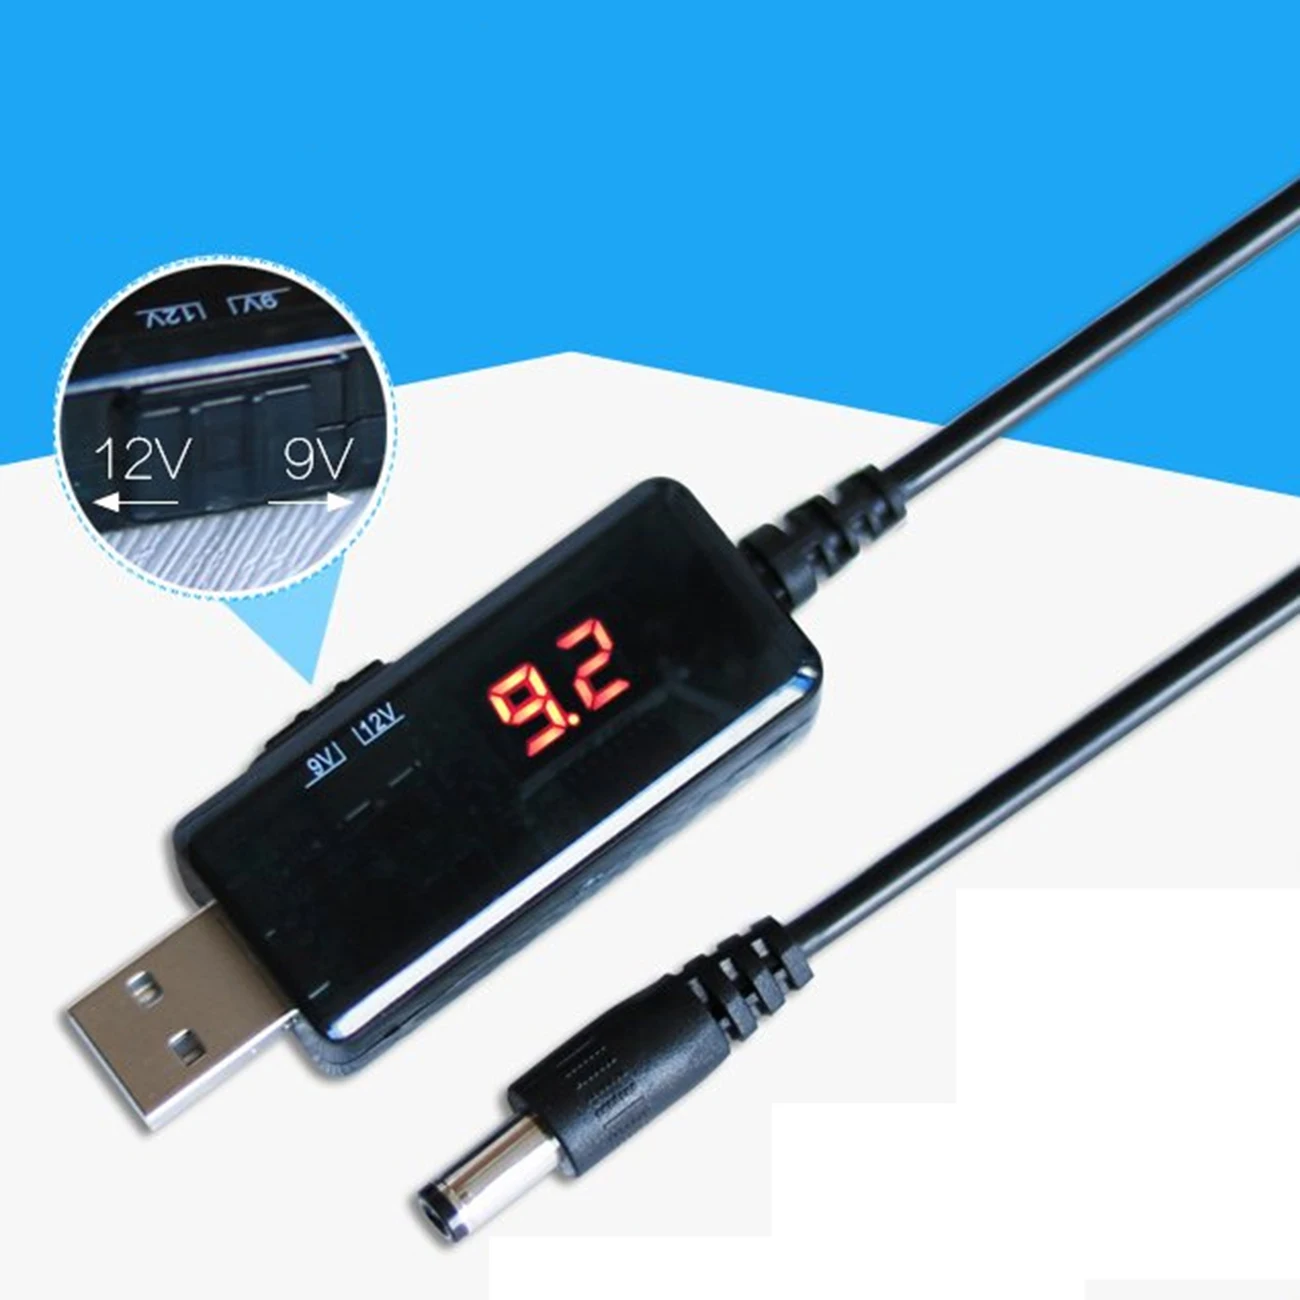 Semoic USB Boost Cable 5V Intensifier à 9V 12V DC Tension Convertisseur Transformateur de Tension 1A élévateur Régulateur de Puissance DC avec Interrupteur Et Affichage LED de Voltmètre 